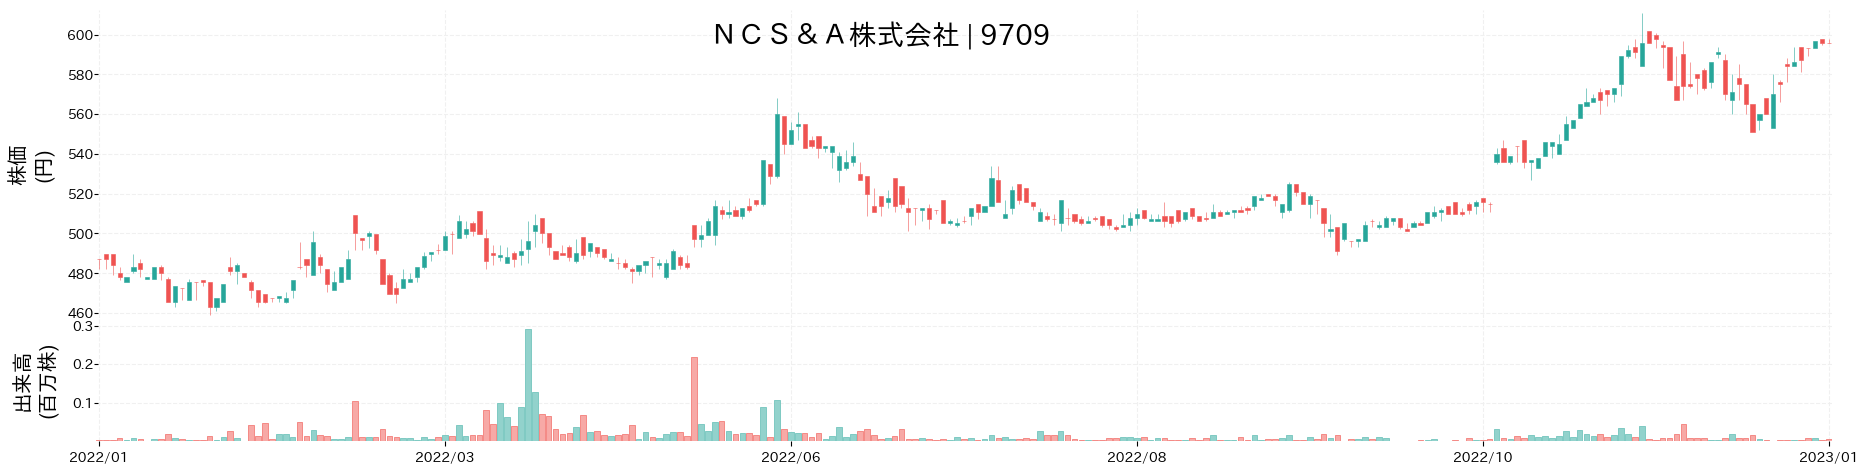 NCS&Aの株価推移(2022)